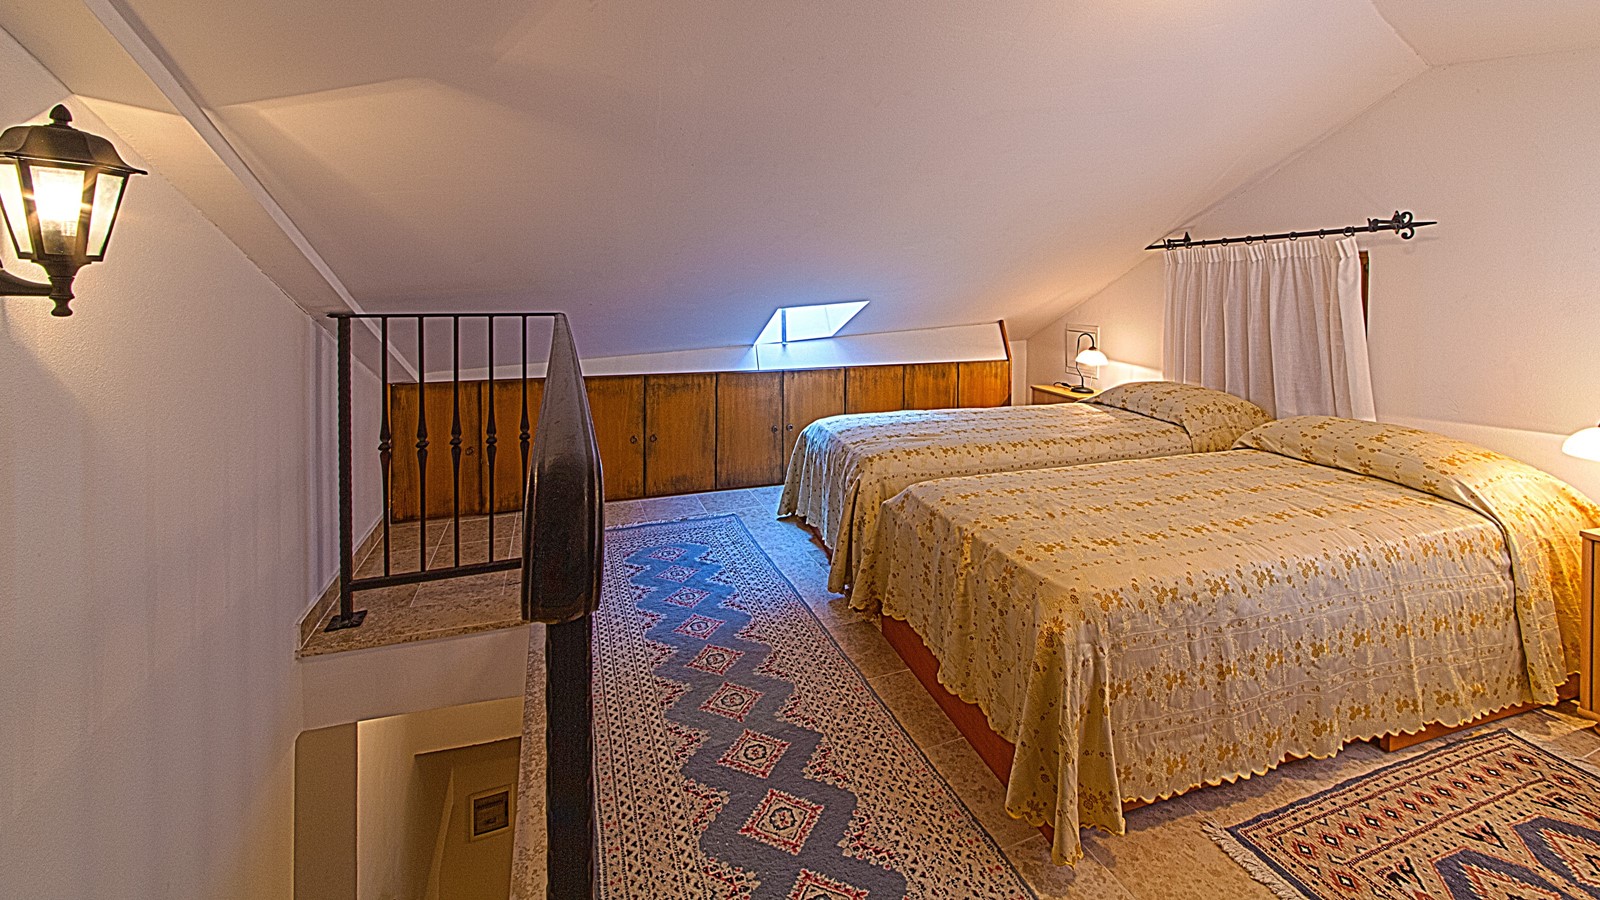 Residence Villetta Garibaldi Attic Room